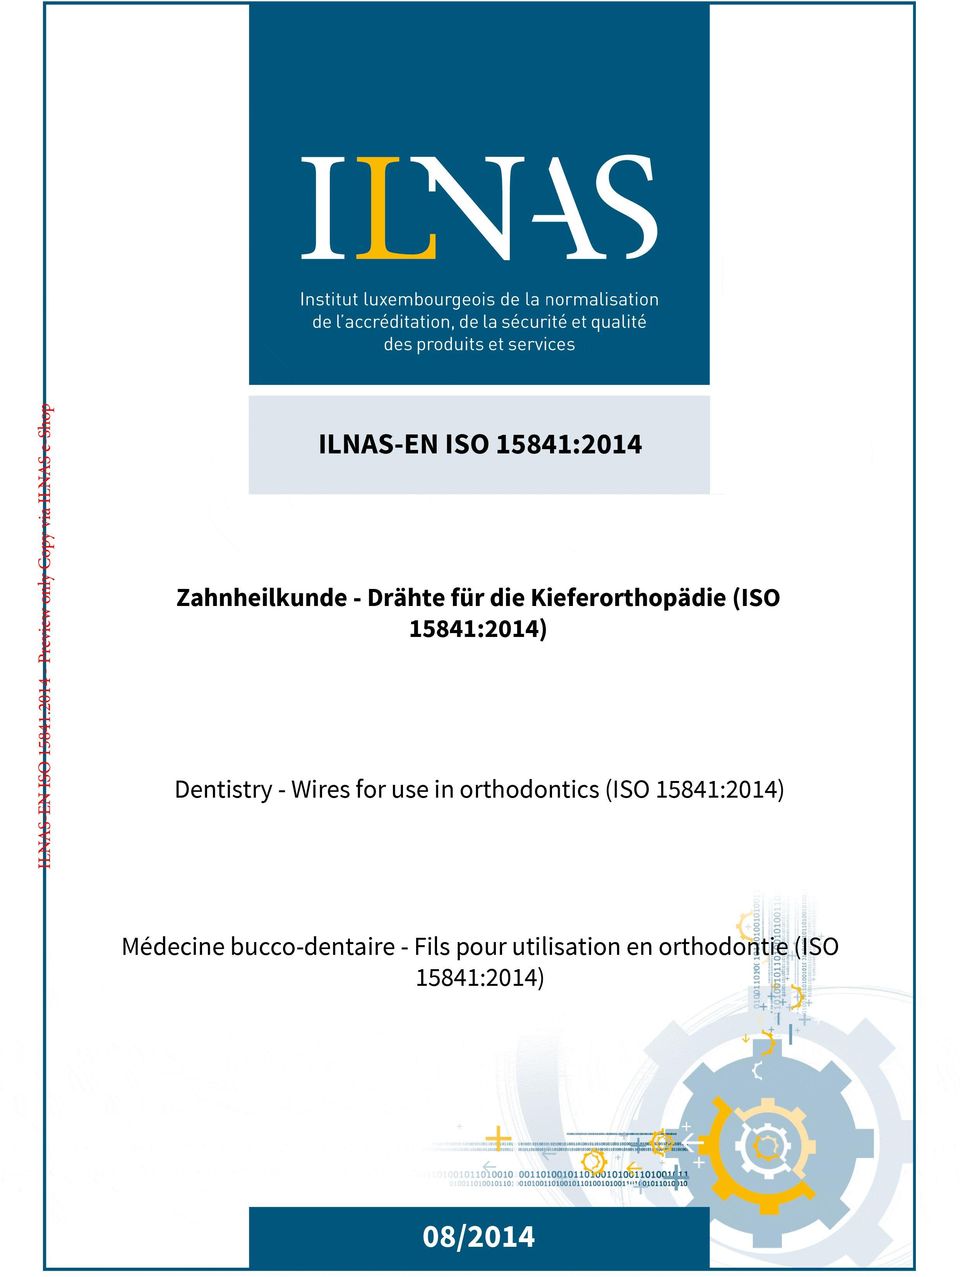 orthodontics (ISO 15841:2014) Médecine